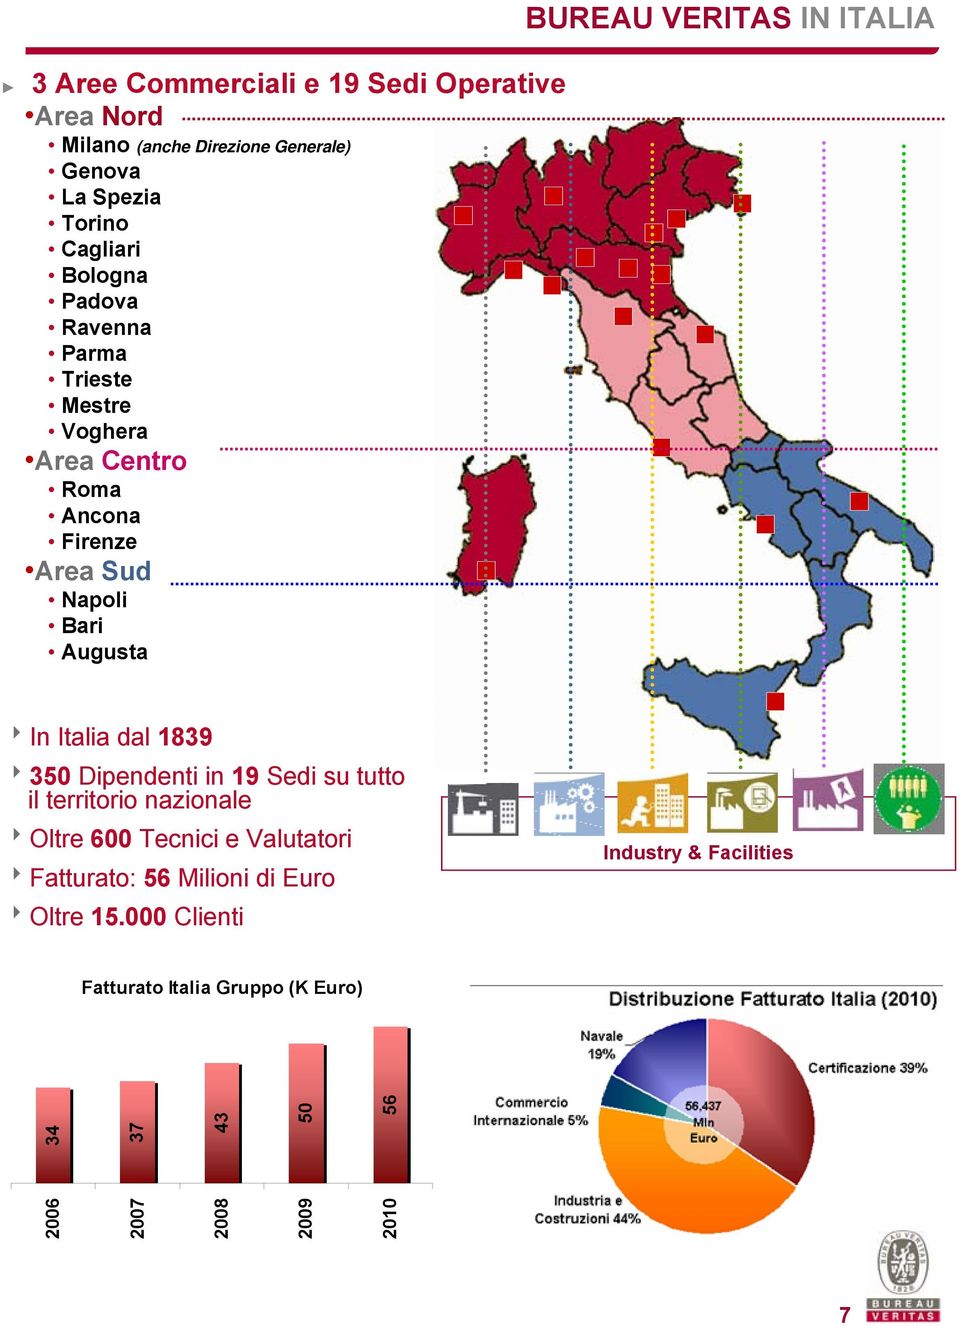 8In Italia dal 1839 8350 Dipendenti in 19 Sedi su tutto il territorio nazionale 8Oltre 600 Tecnici e Valutatori 8Fatturato: 56